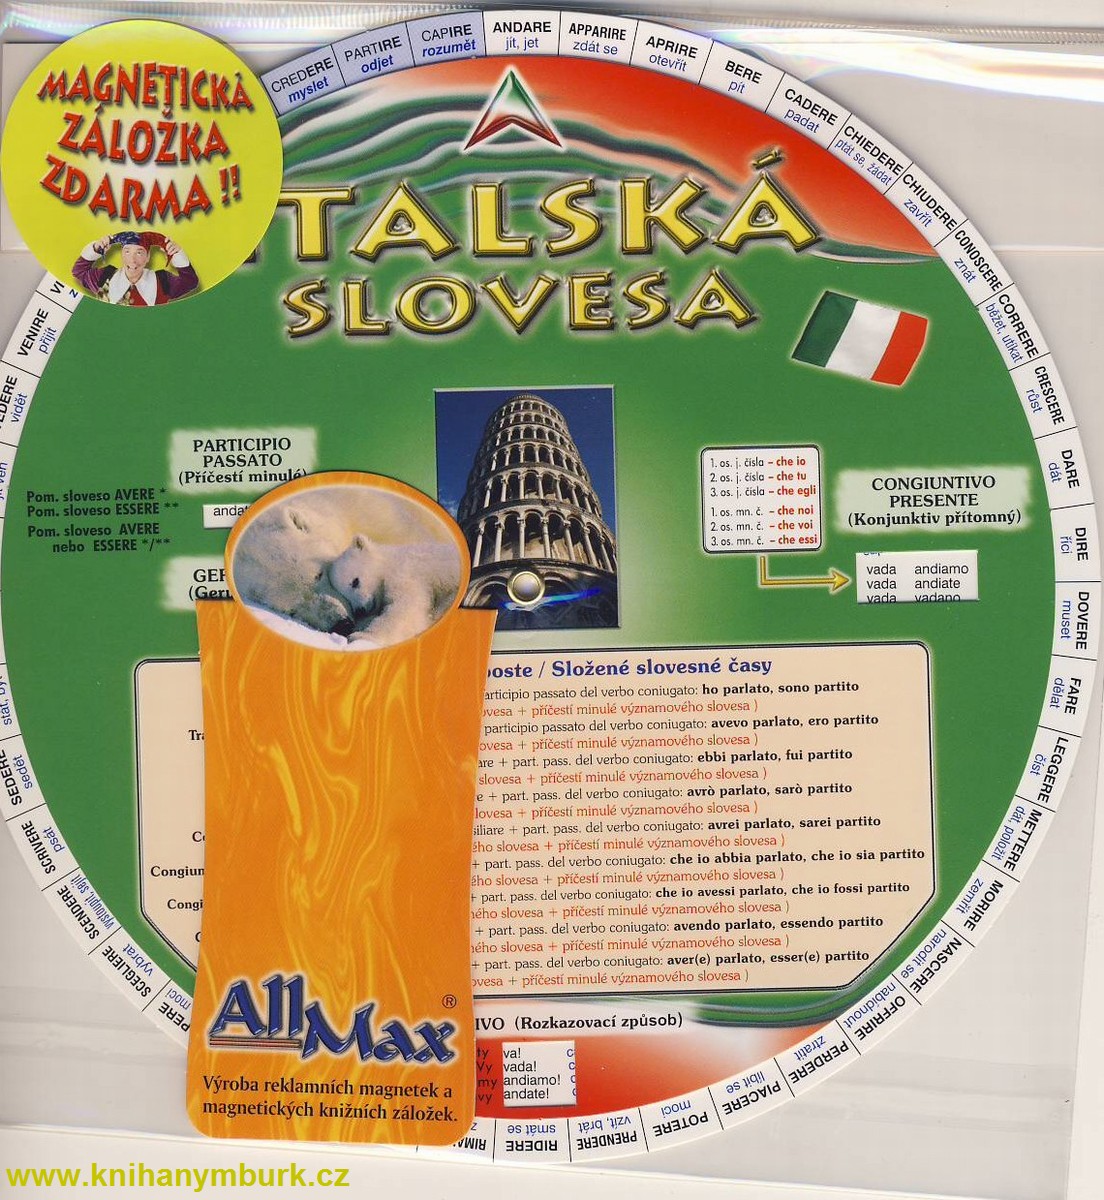 ALLMAX - Italská slovesa 